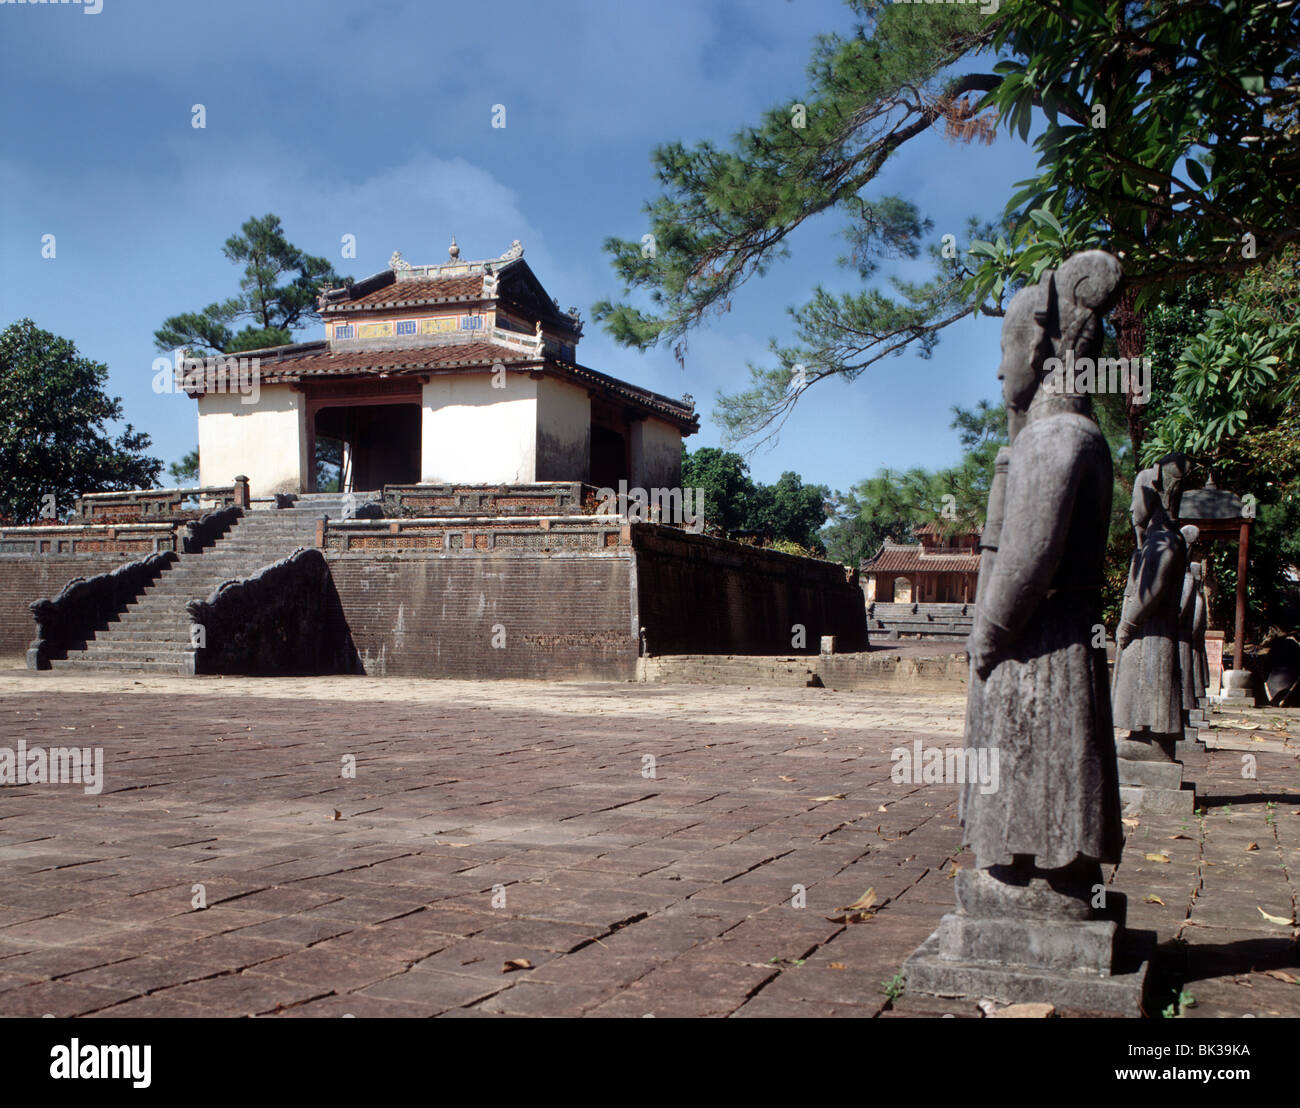 La dynastie des Nguyen, mausolées, tombeaux royaux Hue, Site du patrimoine mondial de l'UNESCO, le Vietnam, l'Indochine, l'Asie Banque D'Images